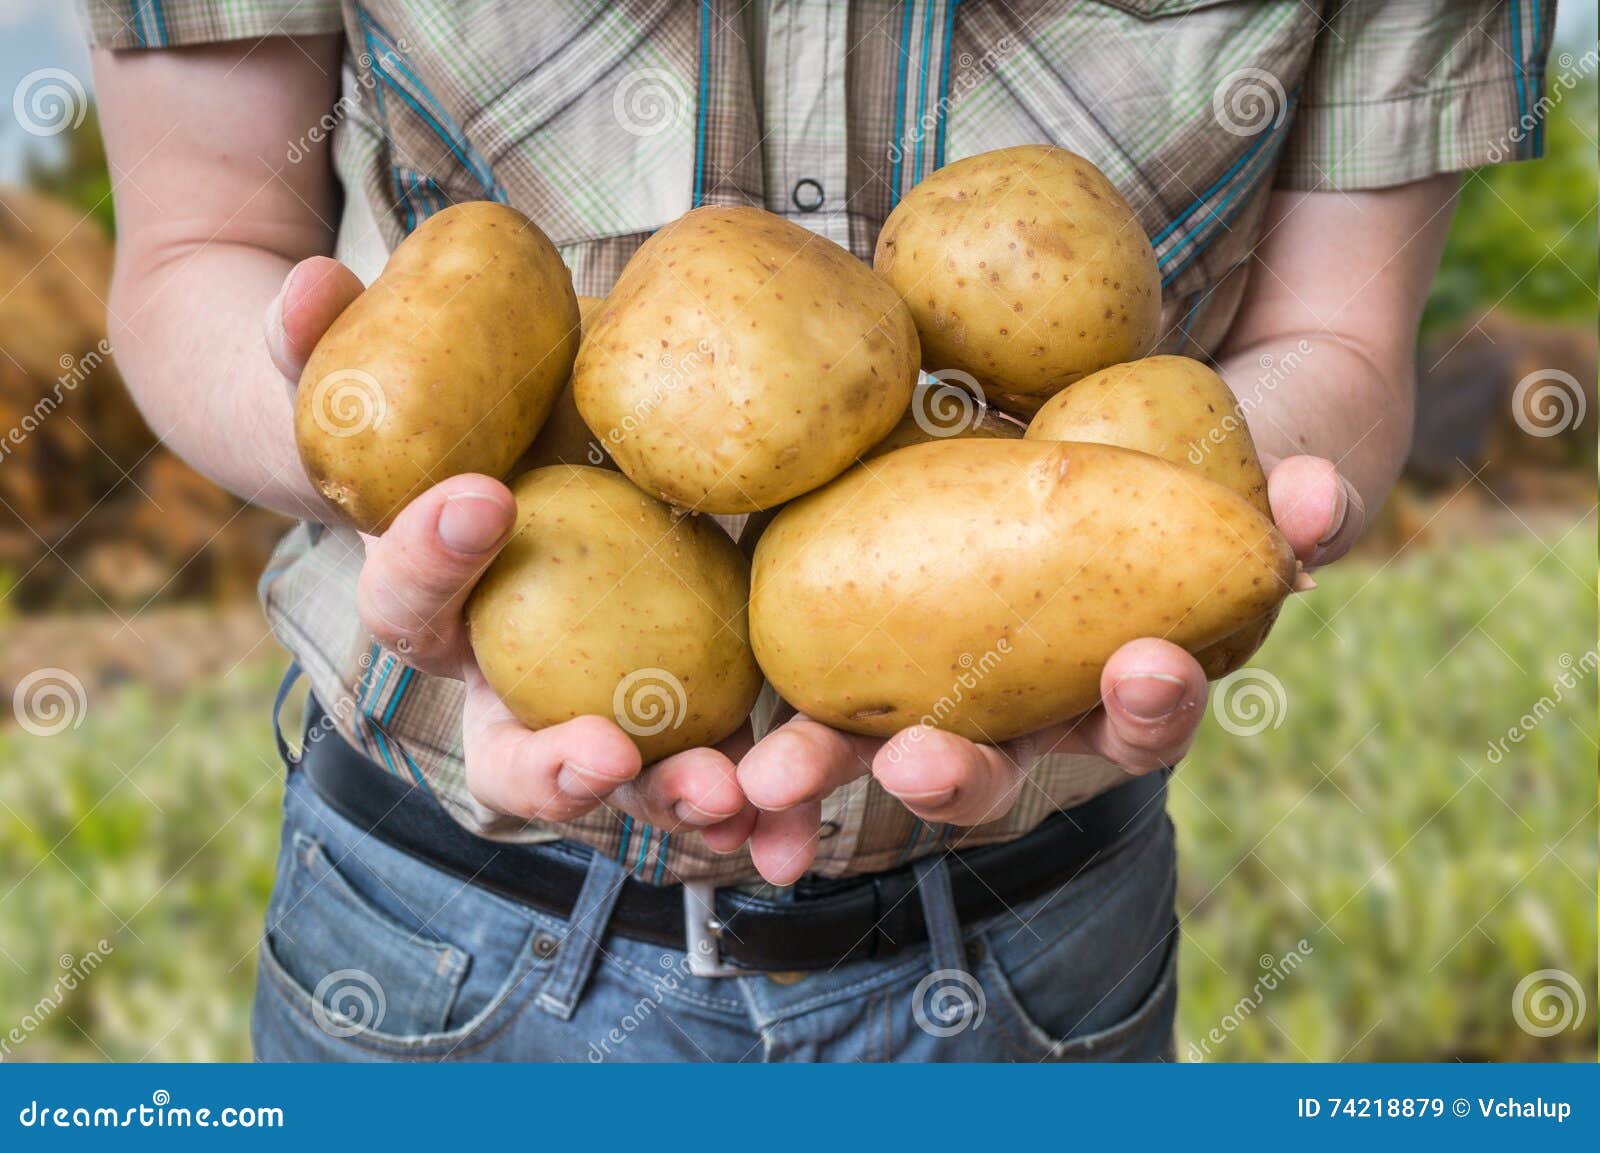 Картофель великан описание сорта. Картошка в руке. Фермер с картошкой. Урожай крупной картошки в руках.